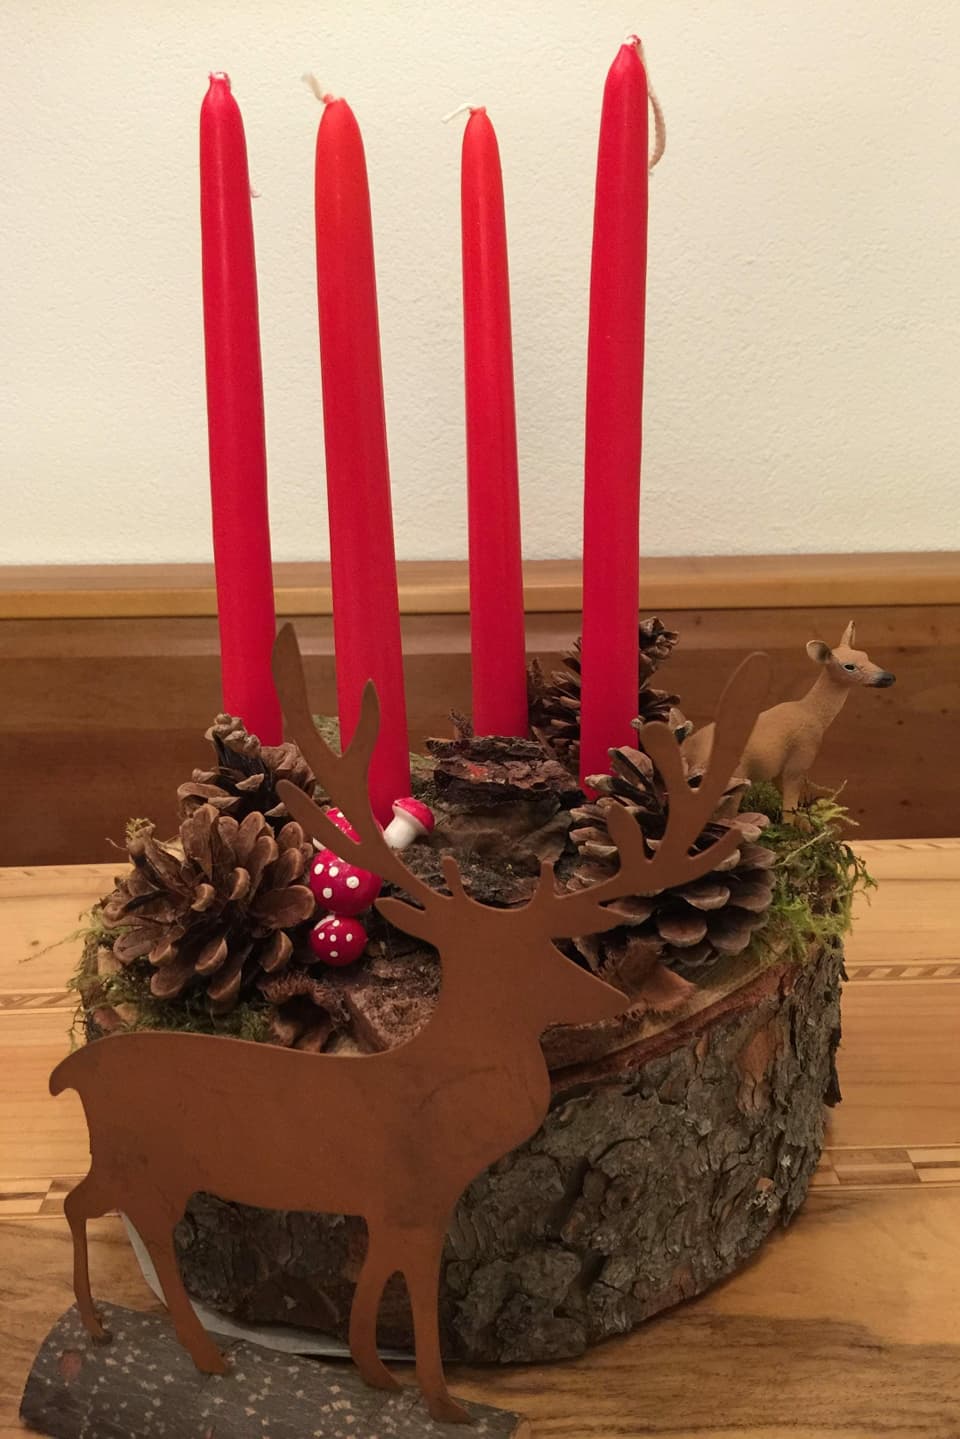 vier rote Kerzen auf einem Holzstamm.